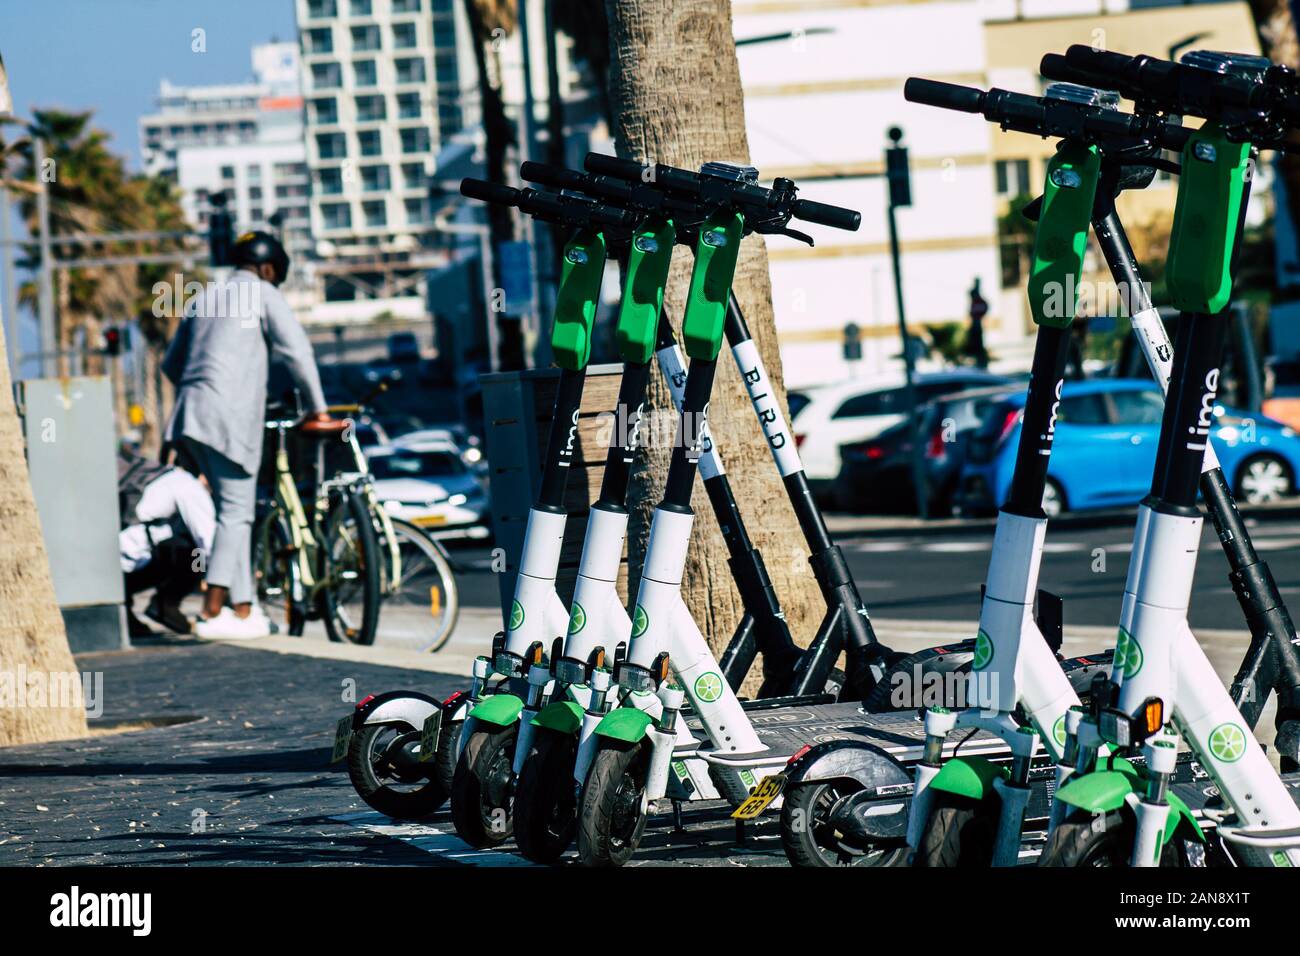 Tel Aviv Israel 11 Janvier 2020 Vue d'un scooter électrique de marque chaux  stationnés dans les rues de Tel Aviv en hiver Photo Stock - Alamy